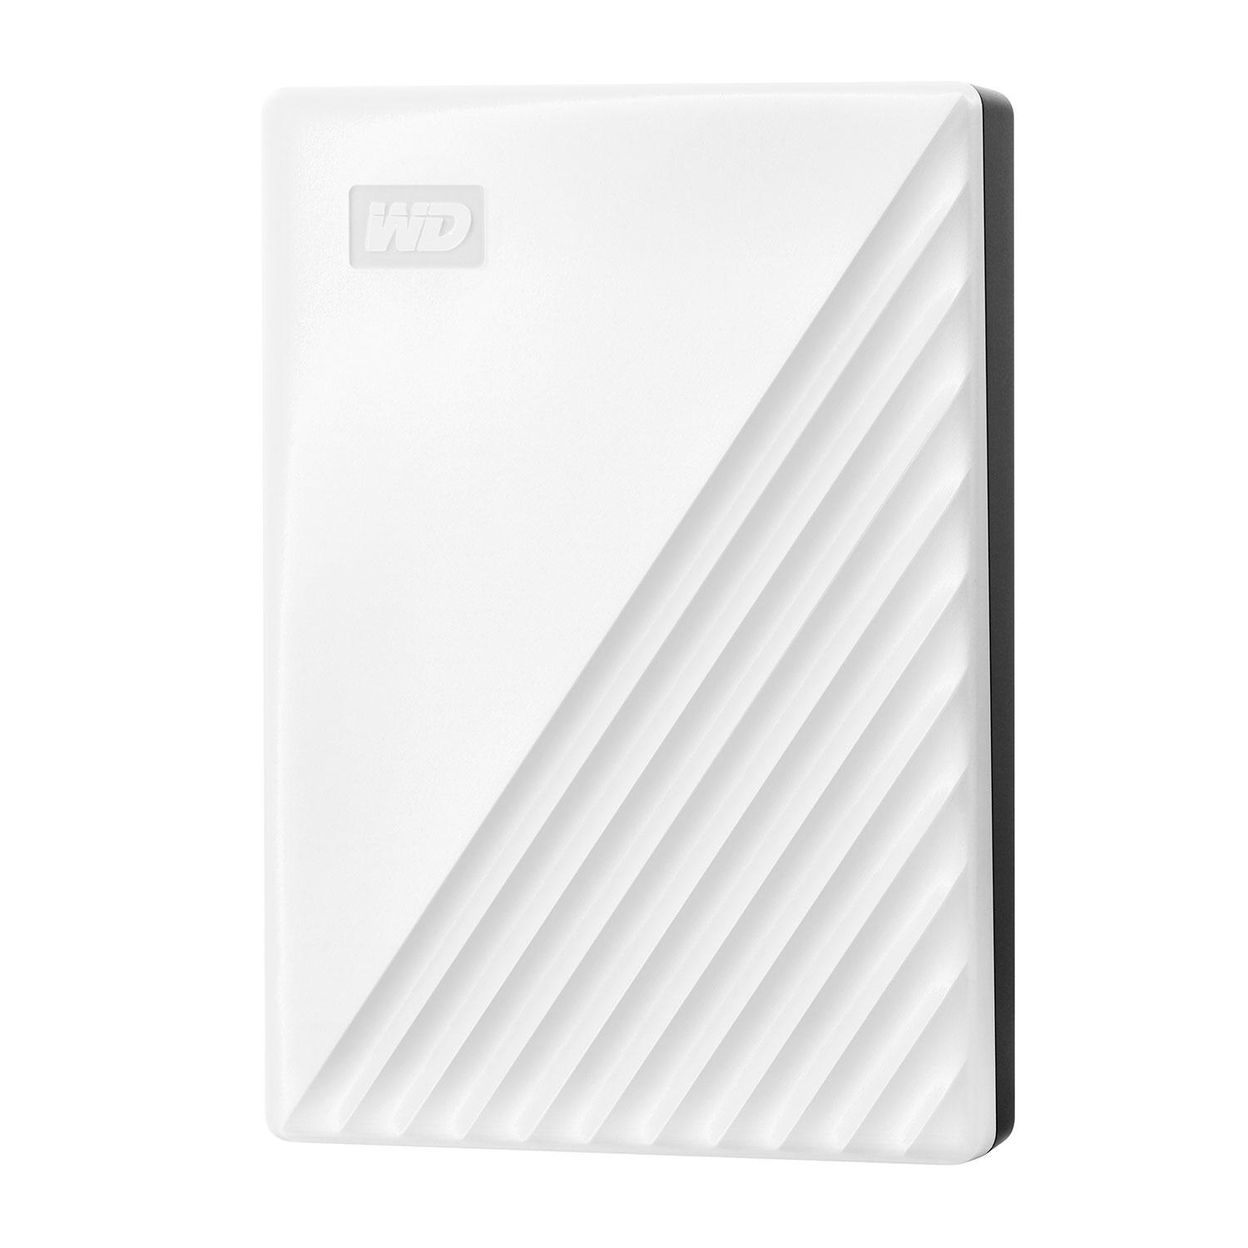 My Passport 5TB Portable Hard Drive, White, WDBPKJ0050BWT-WESB